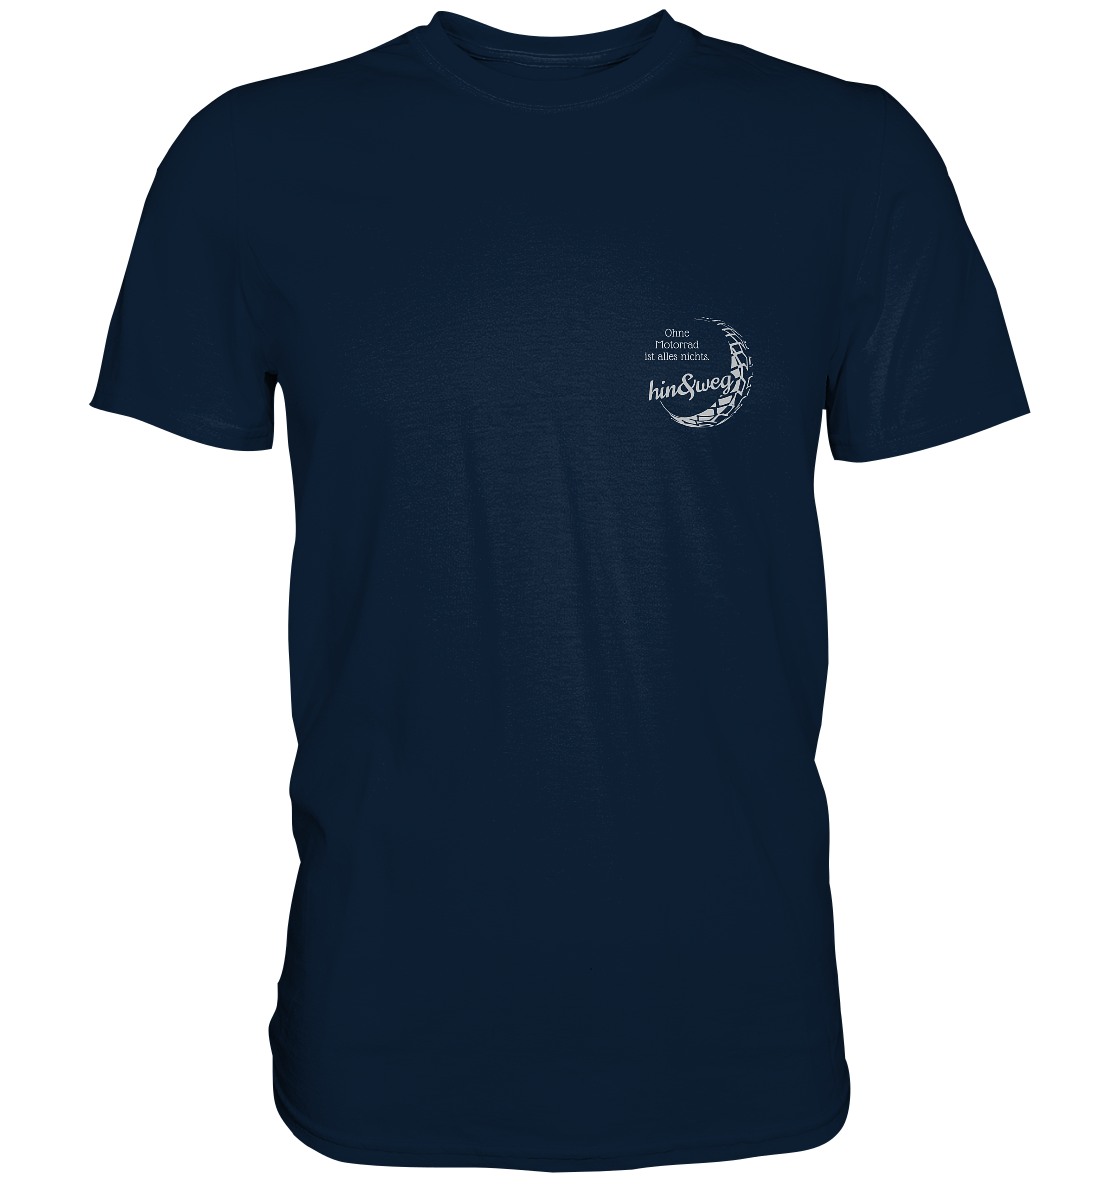 Herren-T-Shirt Rundhals, weißer Aufdruck: Logo hin und weg mit Spruch "Ohne Motorrad ist alles nichts.", dunkel blau